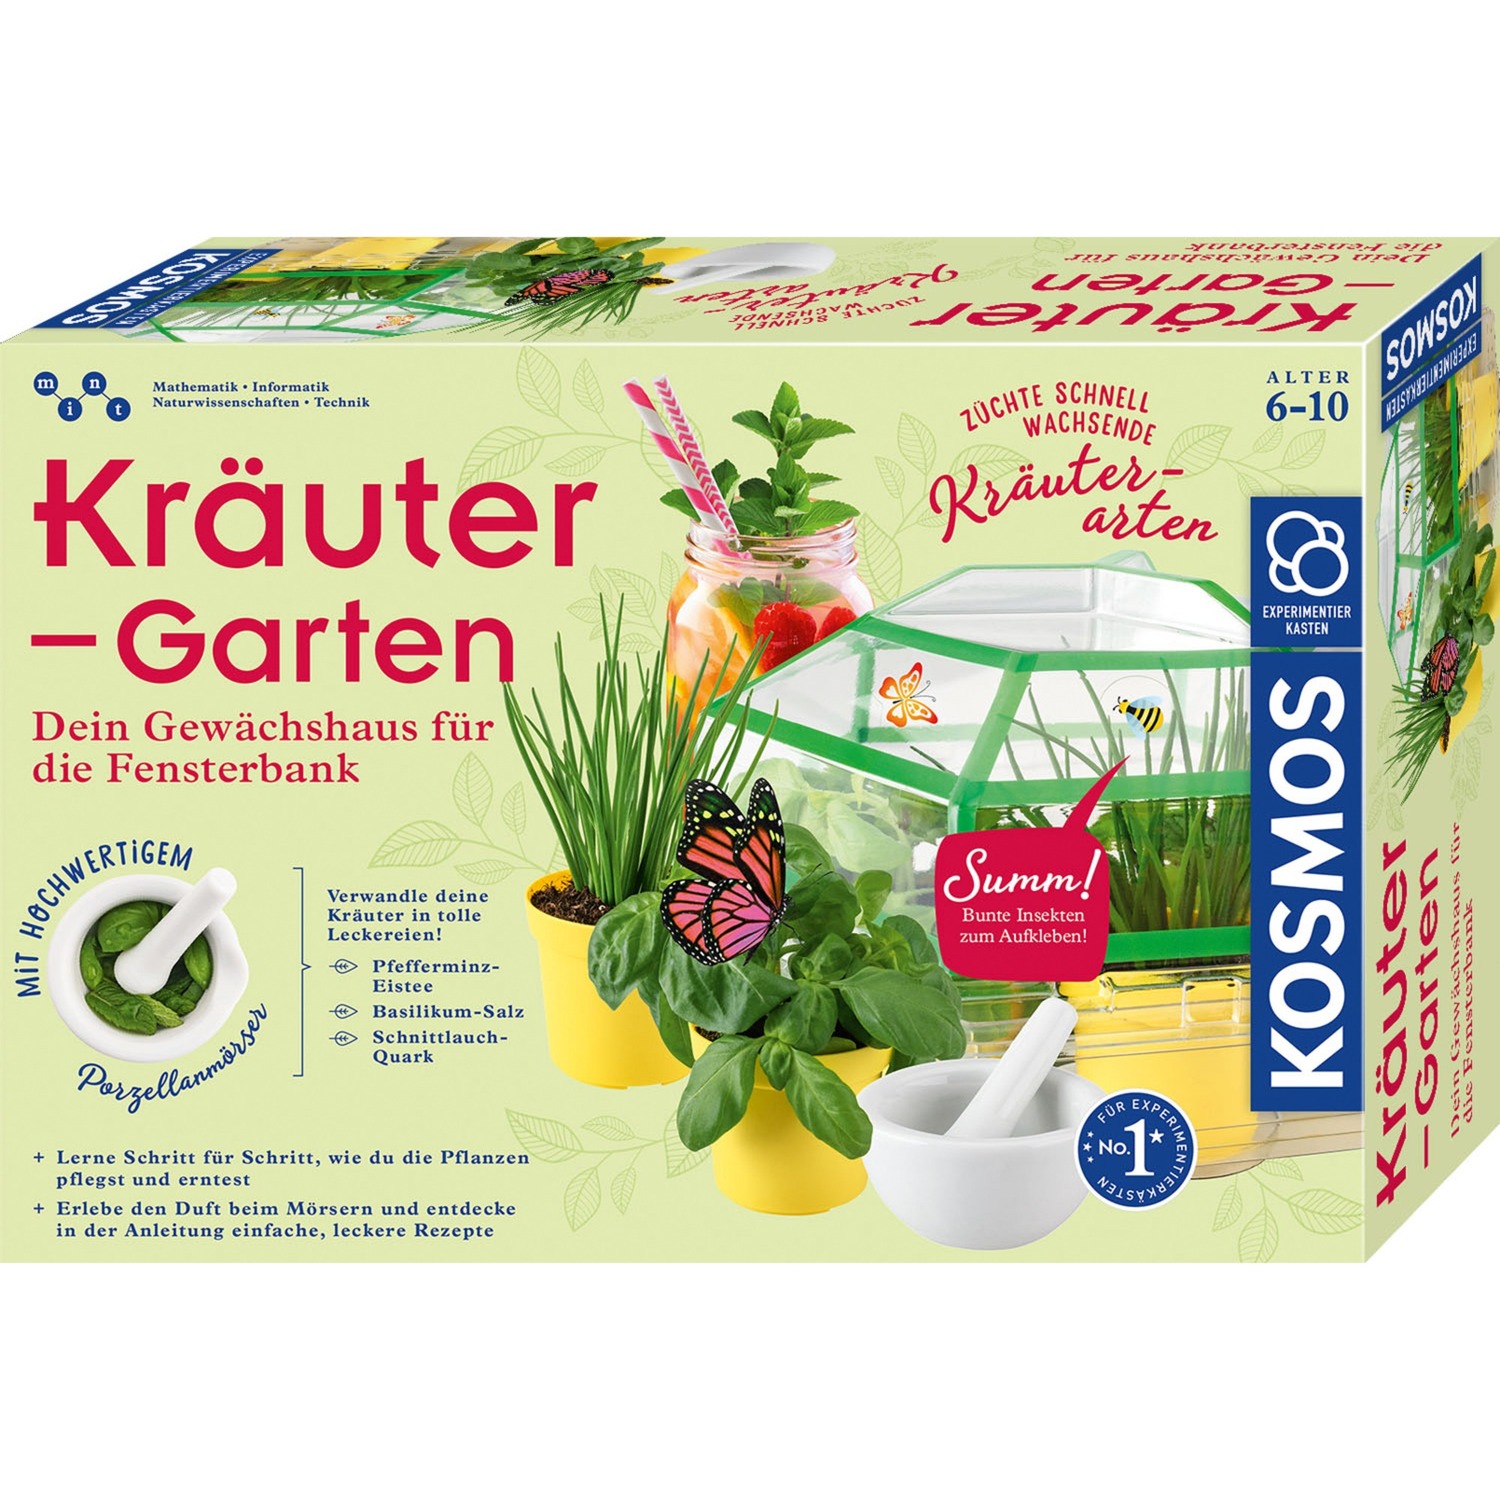 Image of Alternate - Kräuter-Garten, Experimentierkasten online einkaufen bei Alternate